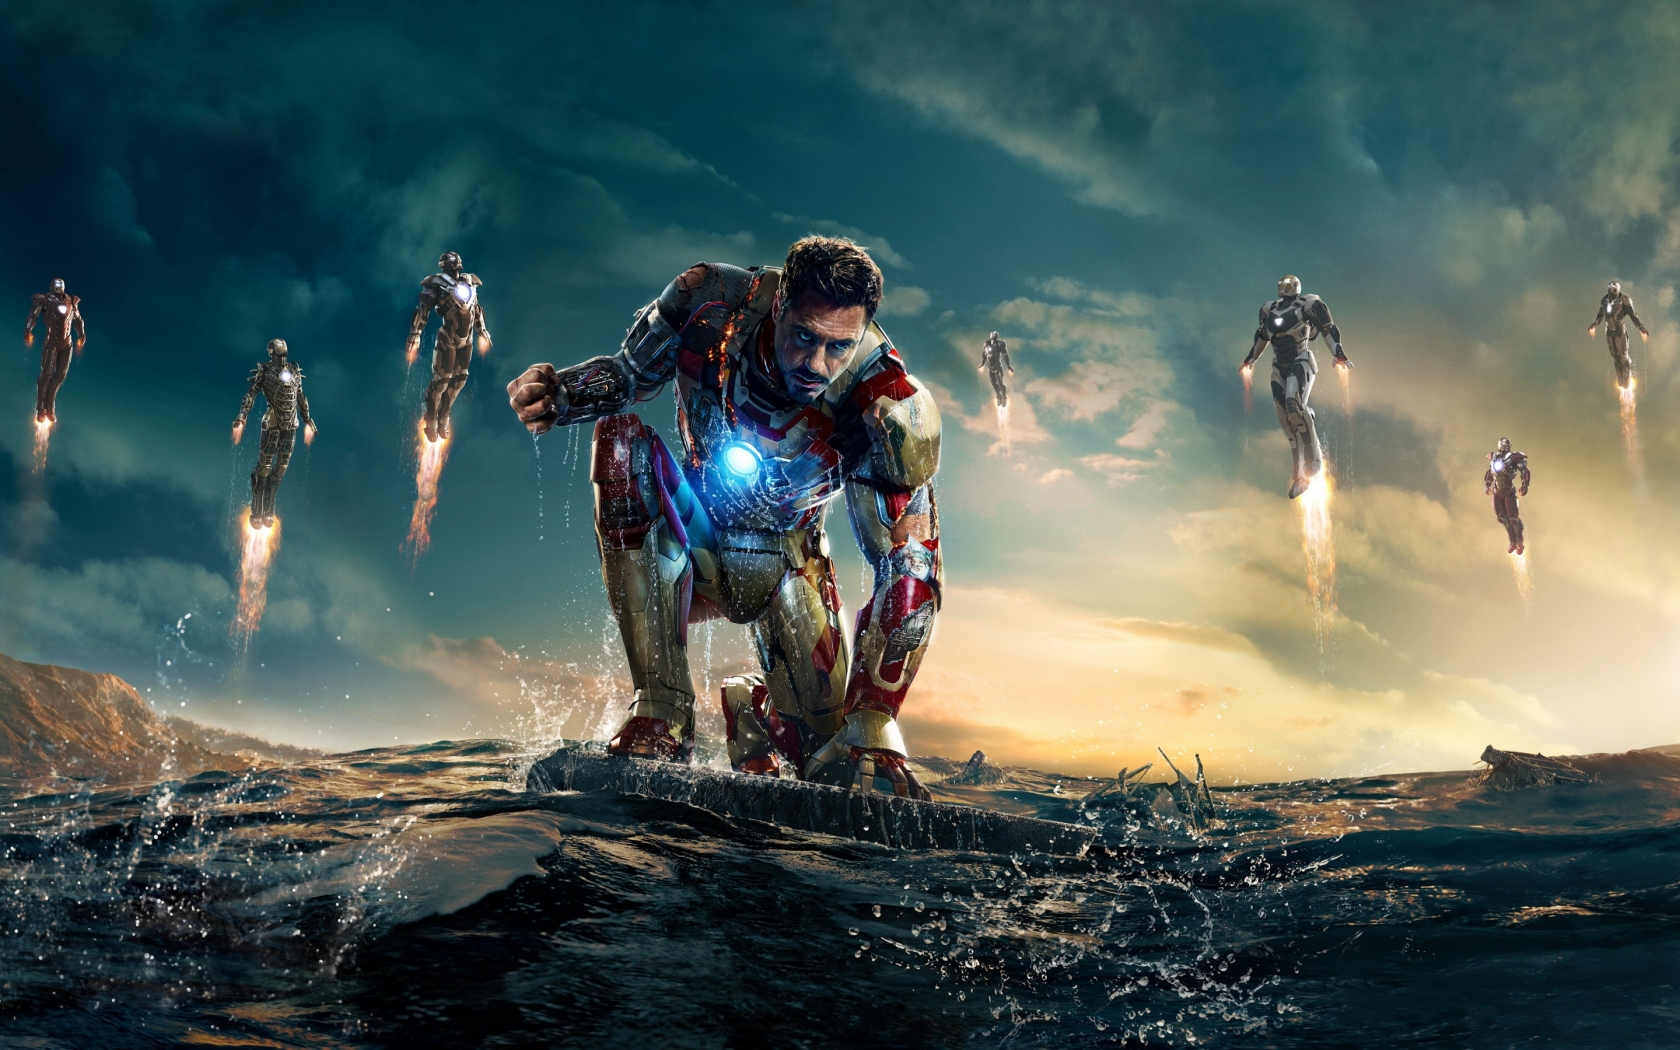 Iron Man 3 Robert Downey Jr for 1680 x 1050 widescreen resolution